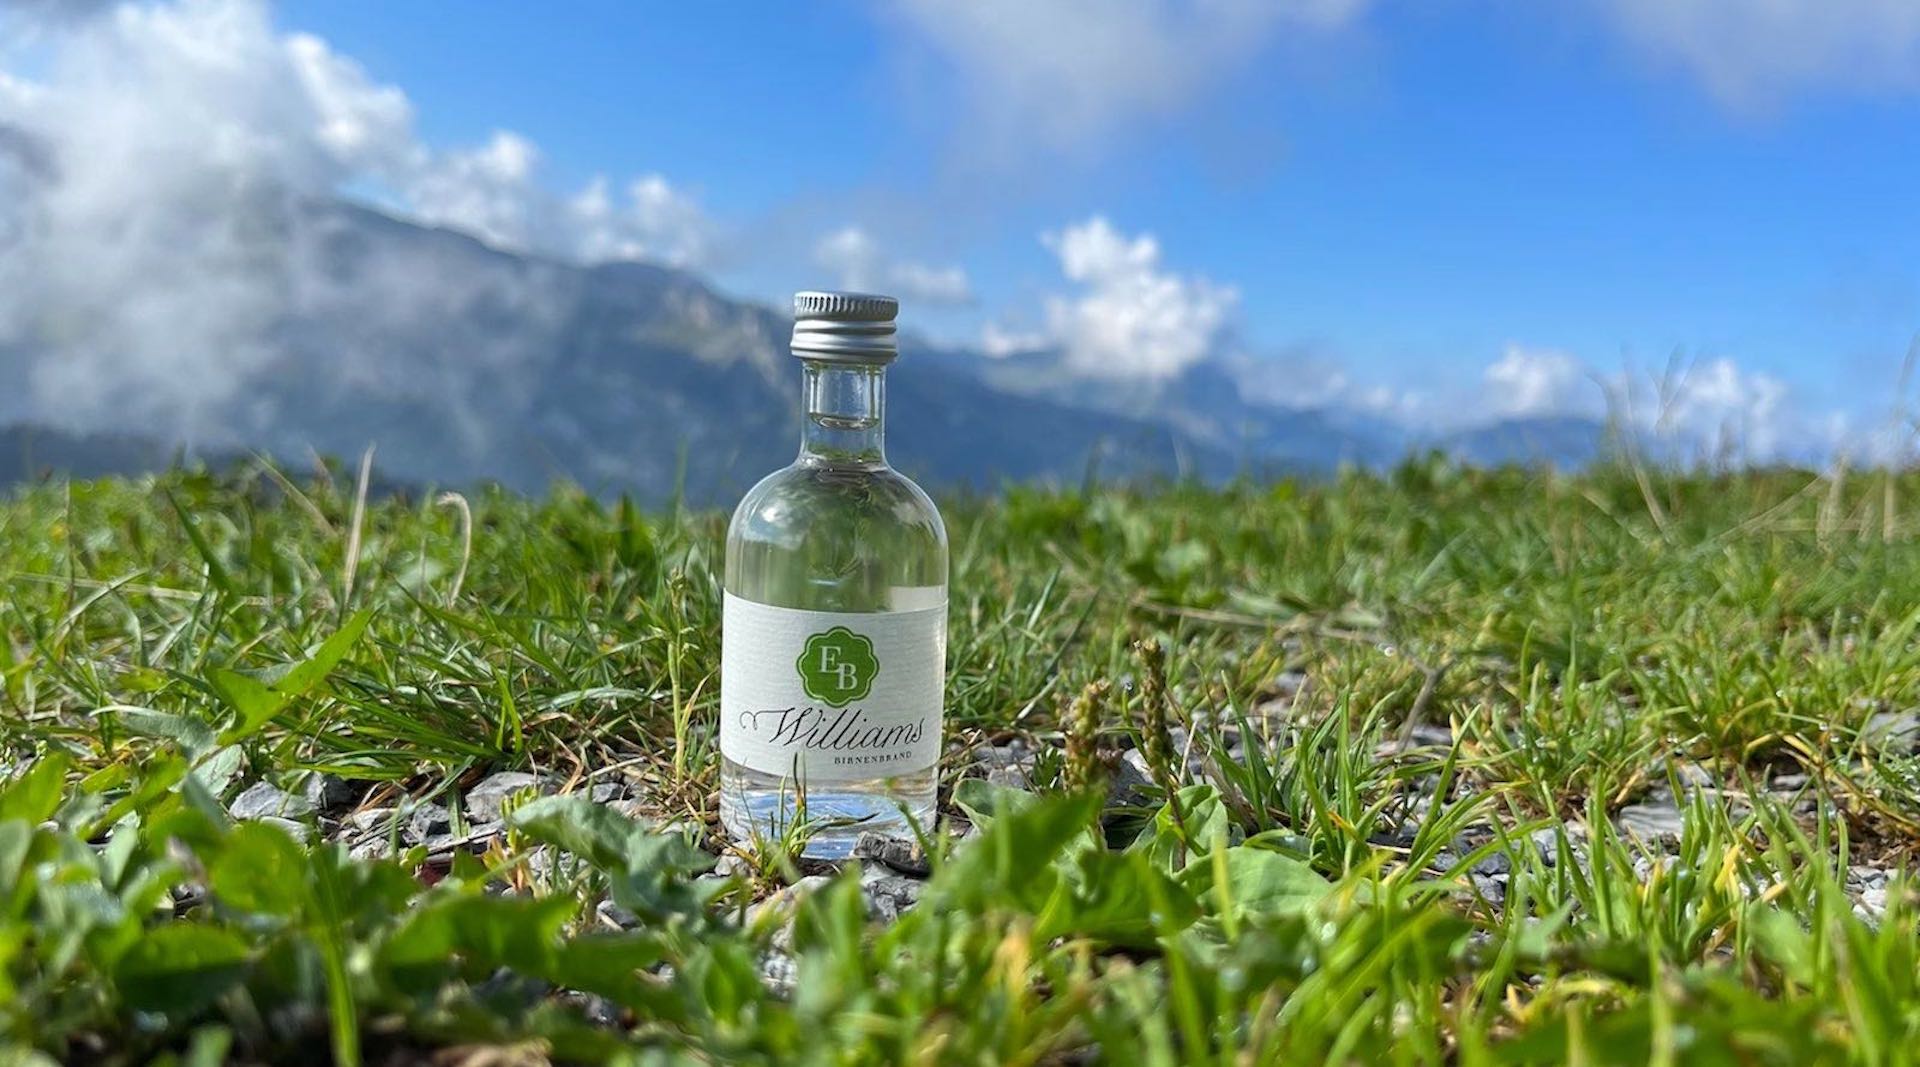 50ml Flasche Williams Christbirnenbrand der Destillerie Brunner in den Bergen der Alpen.